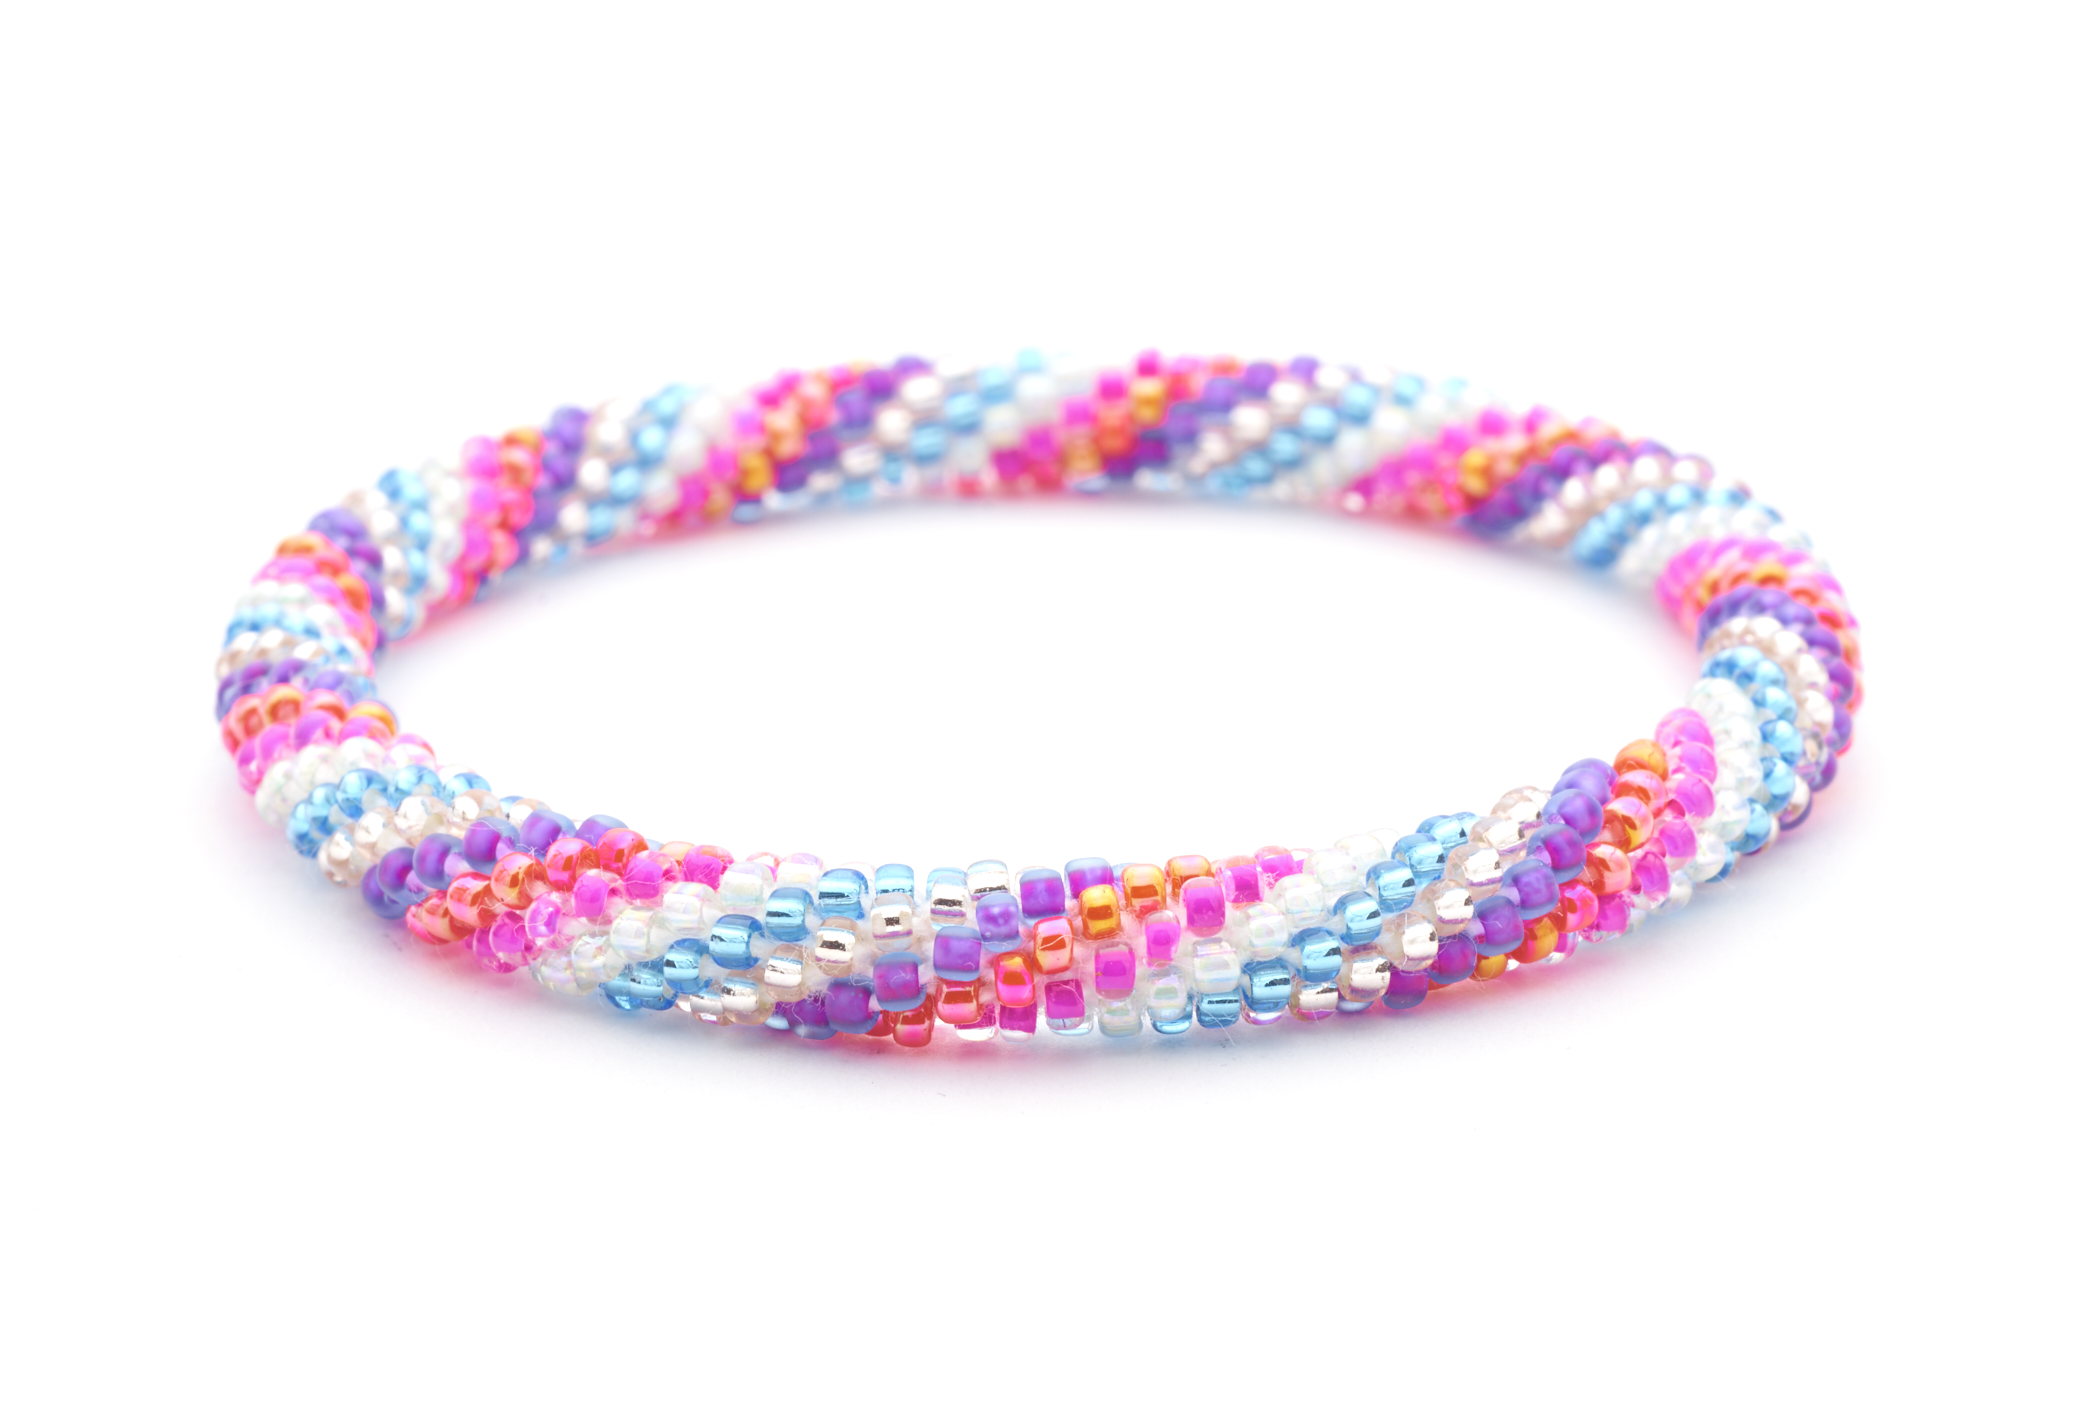 Sashka Co. Extended 8" Bracelet Pink / White / Purple / Orange / Blue / Clear Rainbow Bliss Bracelet - Extended 8"